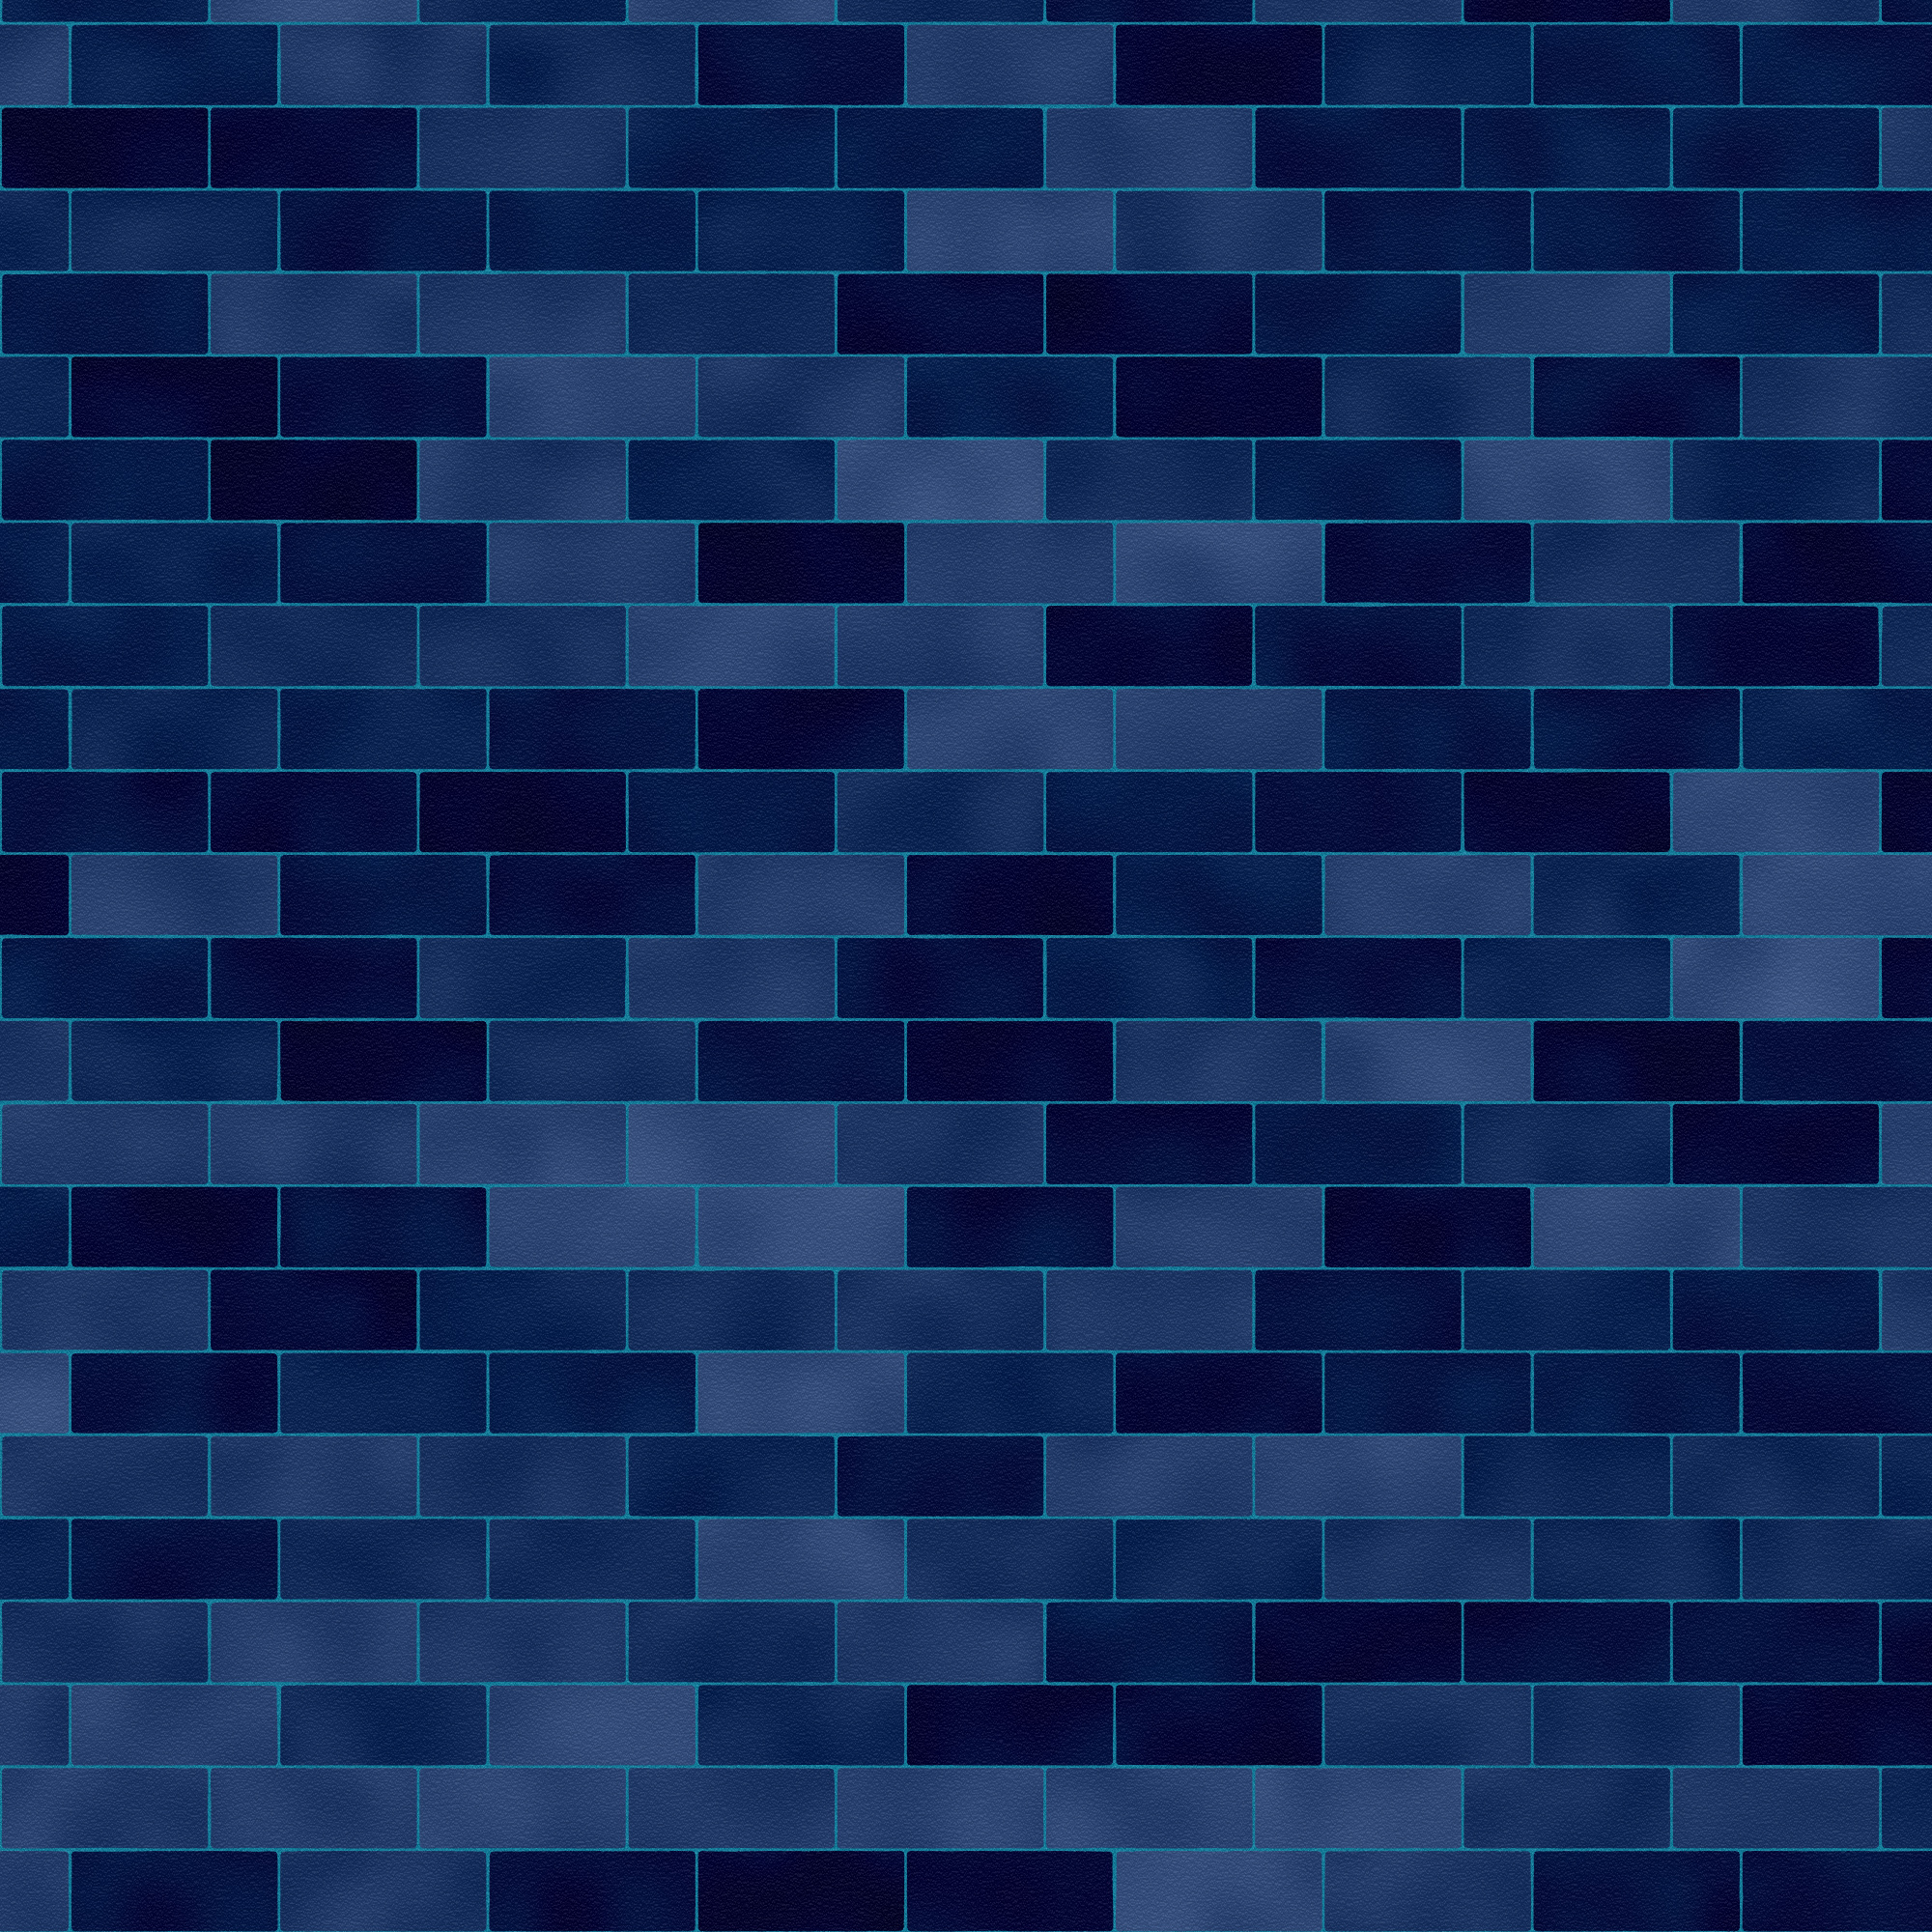 blue brick wall texture, синяя кирпичная стена, скачать фото, фон, текстура